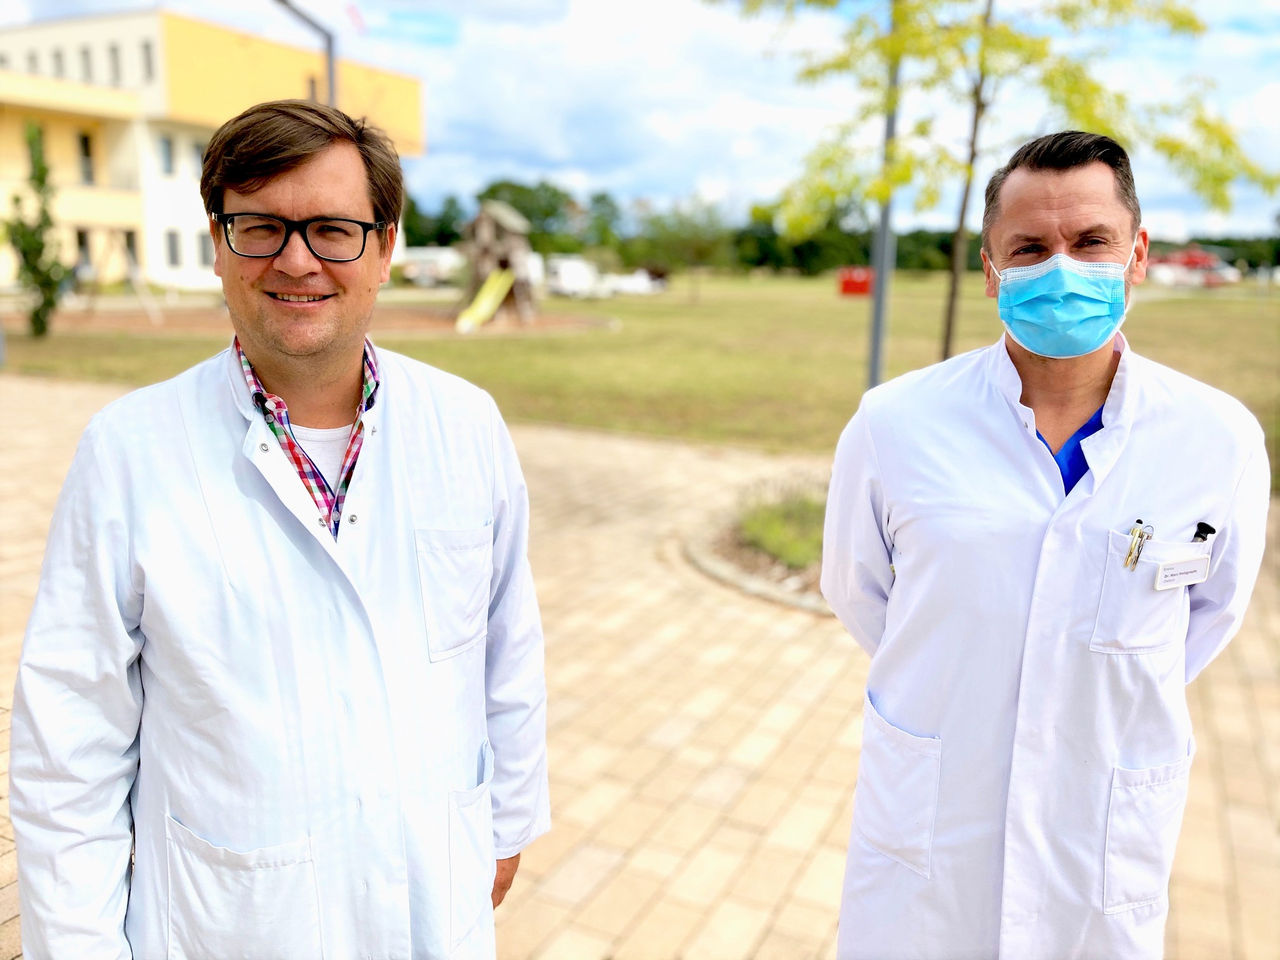 Klinik für Allgemein-, Viszeral- und minimal-invasive Chirurgie begrüßt neuen Chefarzt